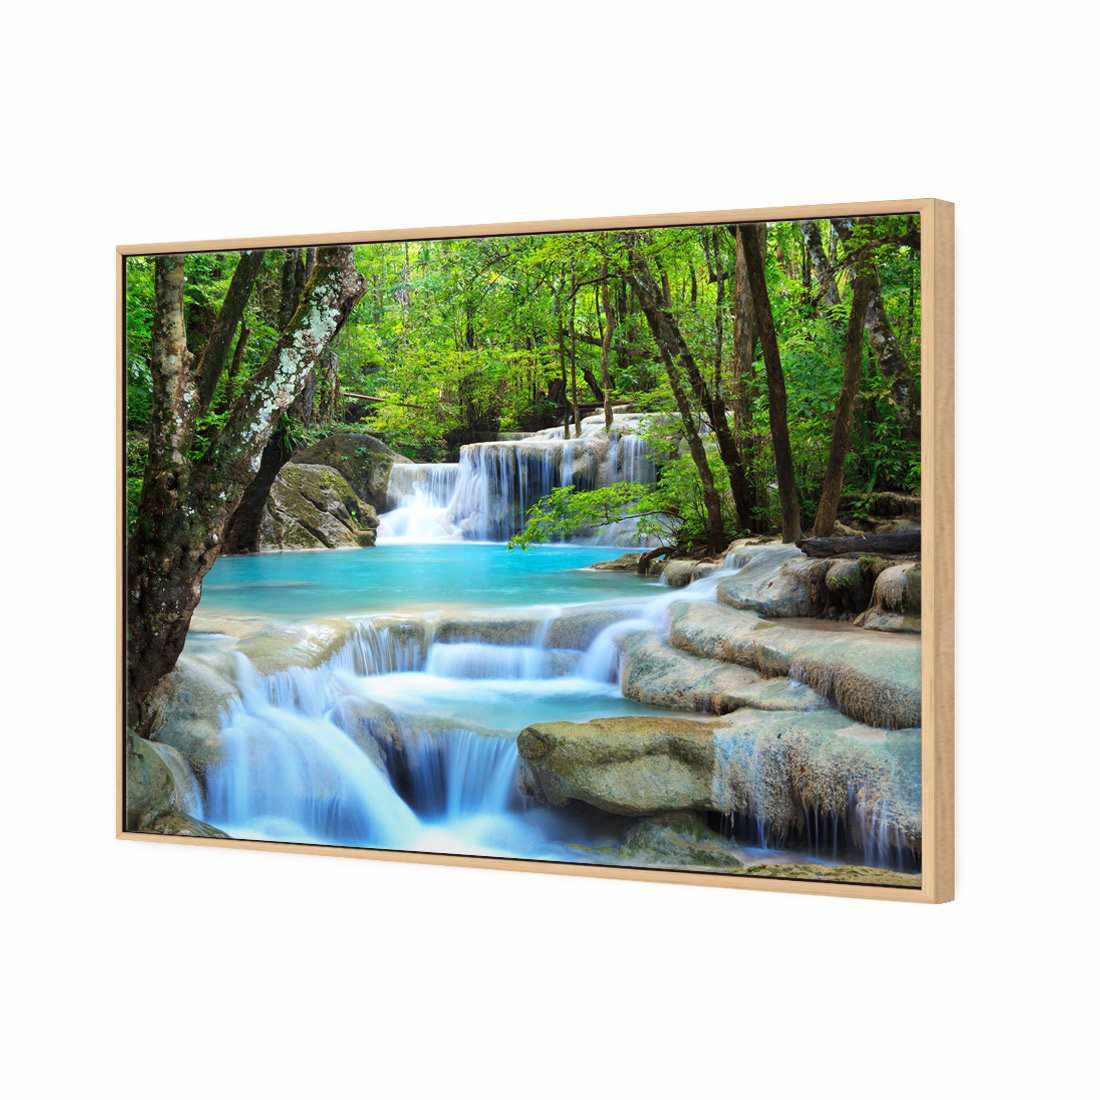 Soft Waterfalls Canvas Art-Canvas-Wall Art Designs-45x30cm-Canvas - Oak Frame-Wall Art Designs